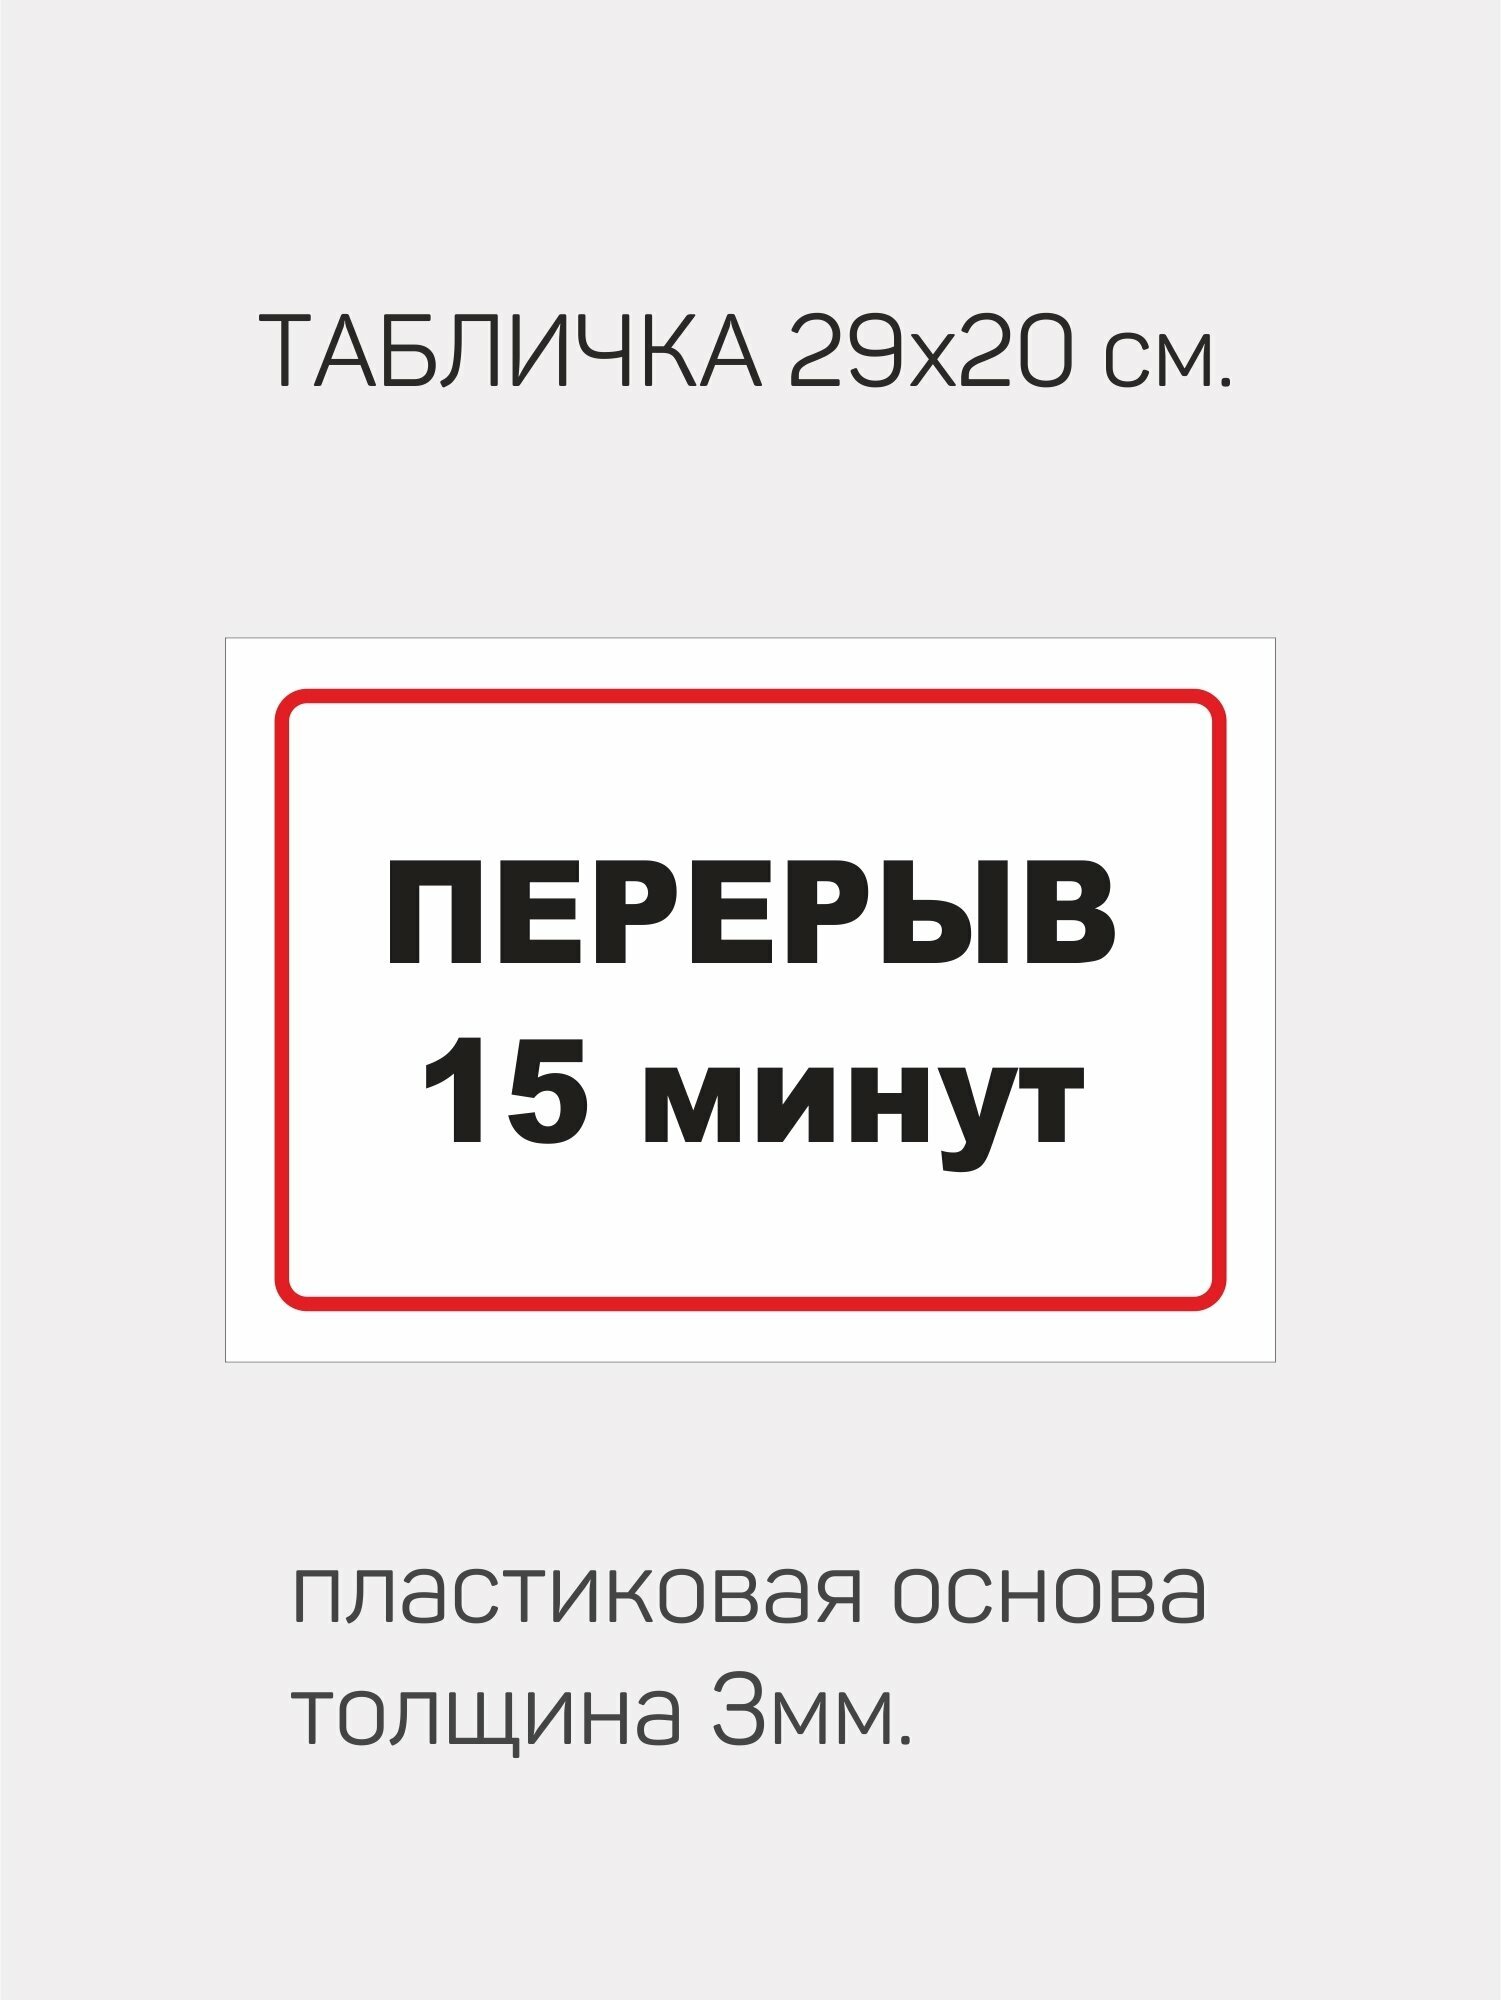 Табличка информационная " Перерыв 15 минут "